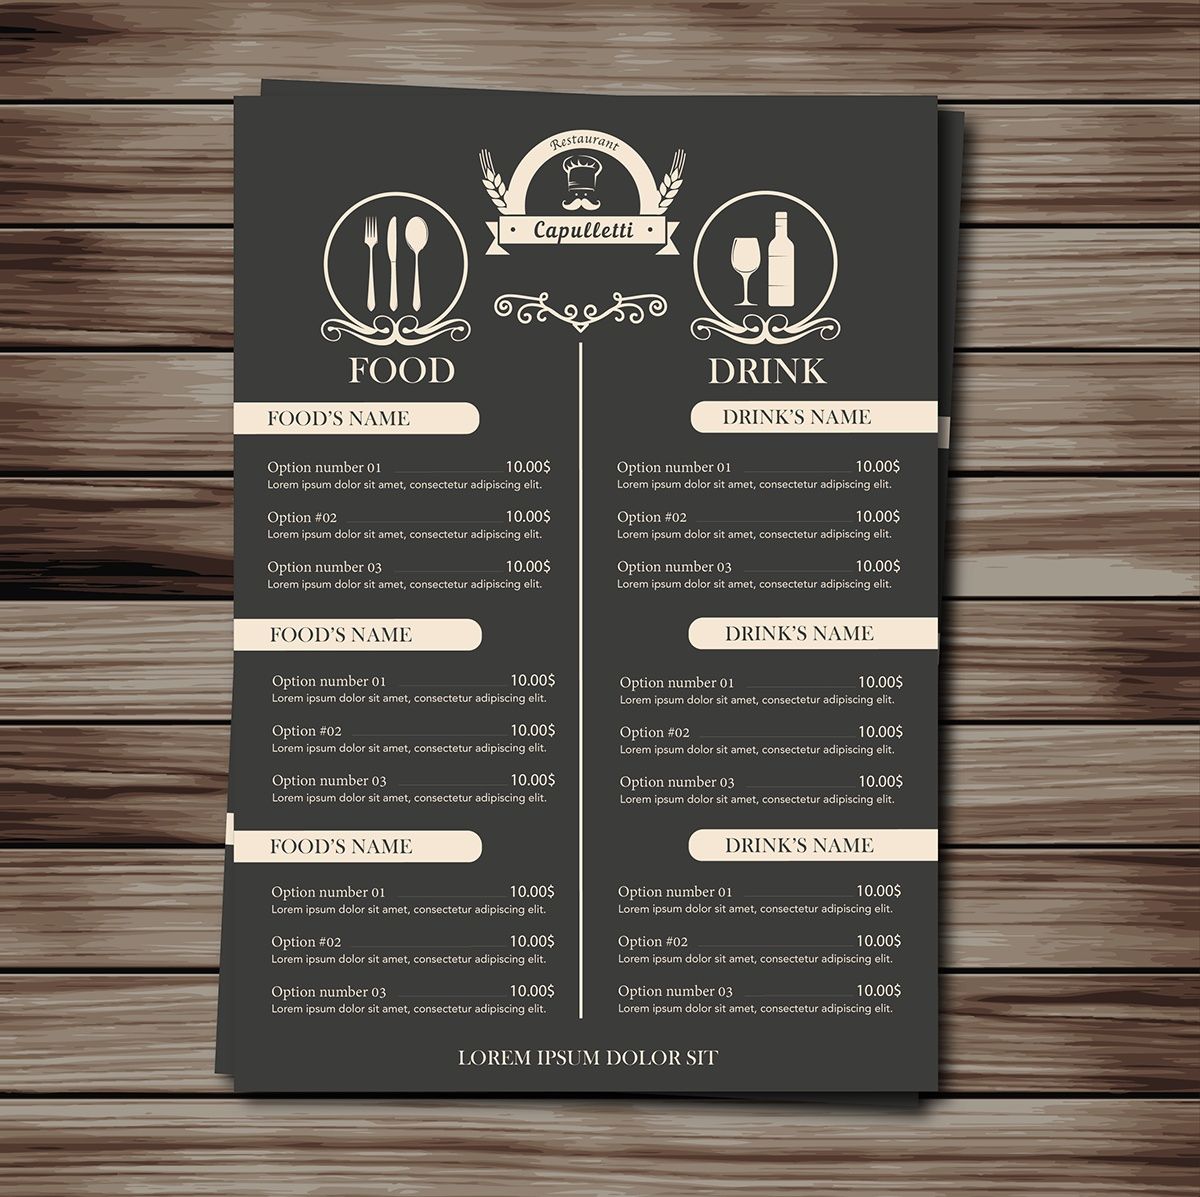 меню для баров и ресторанов